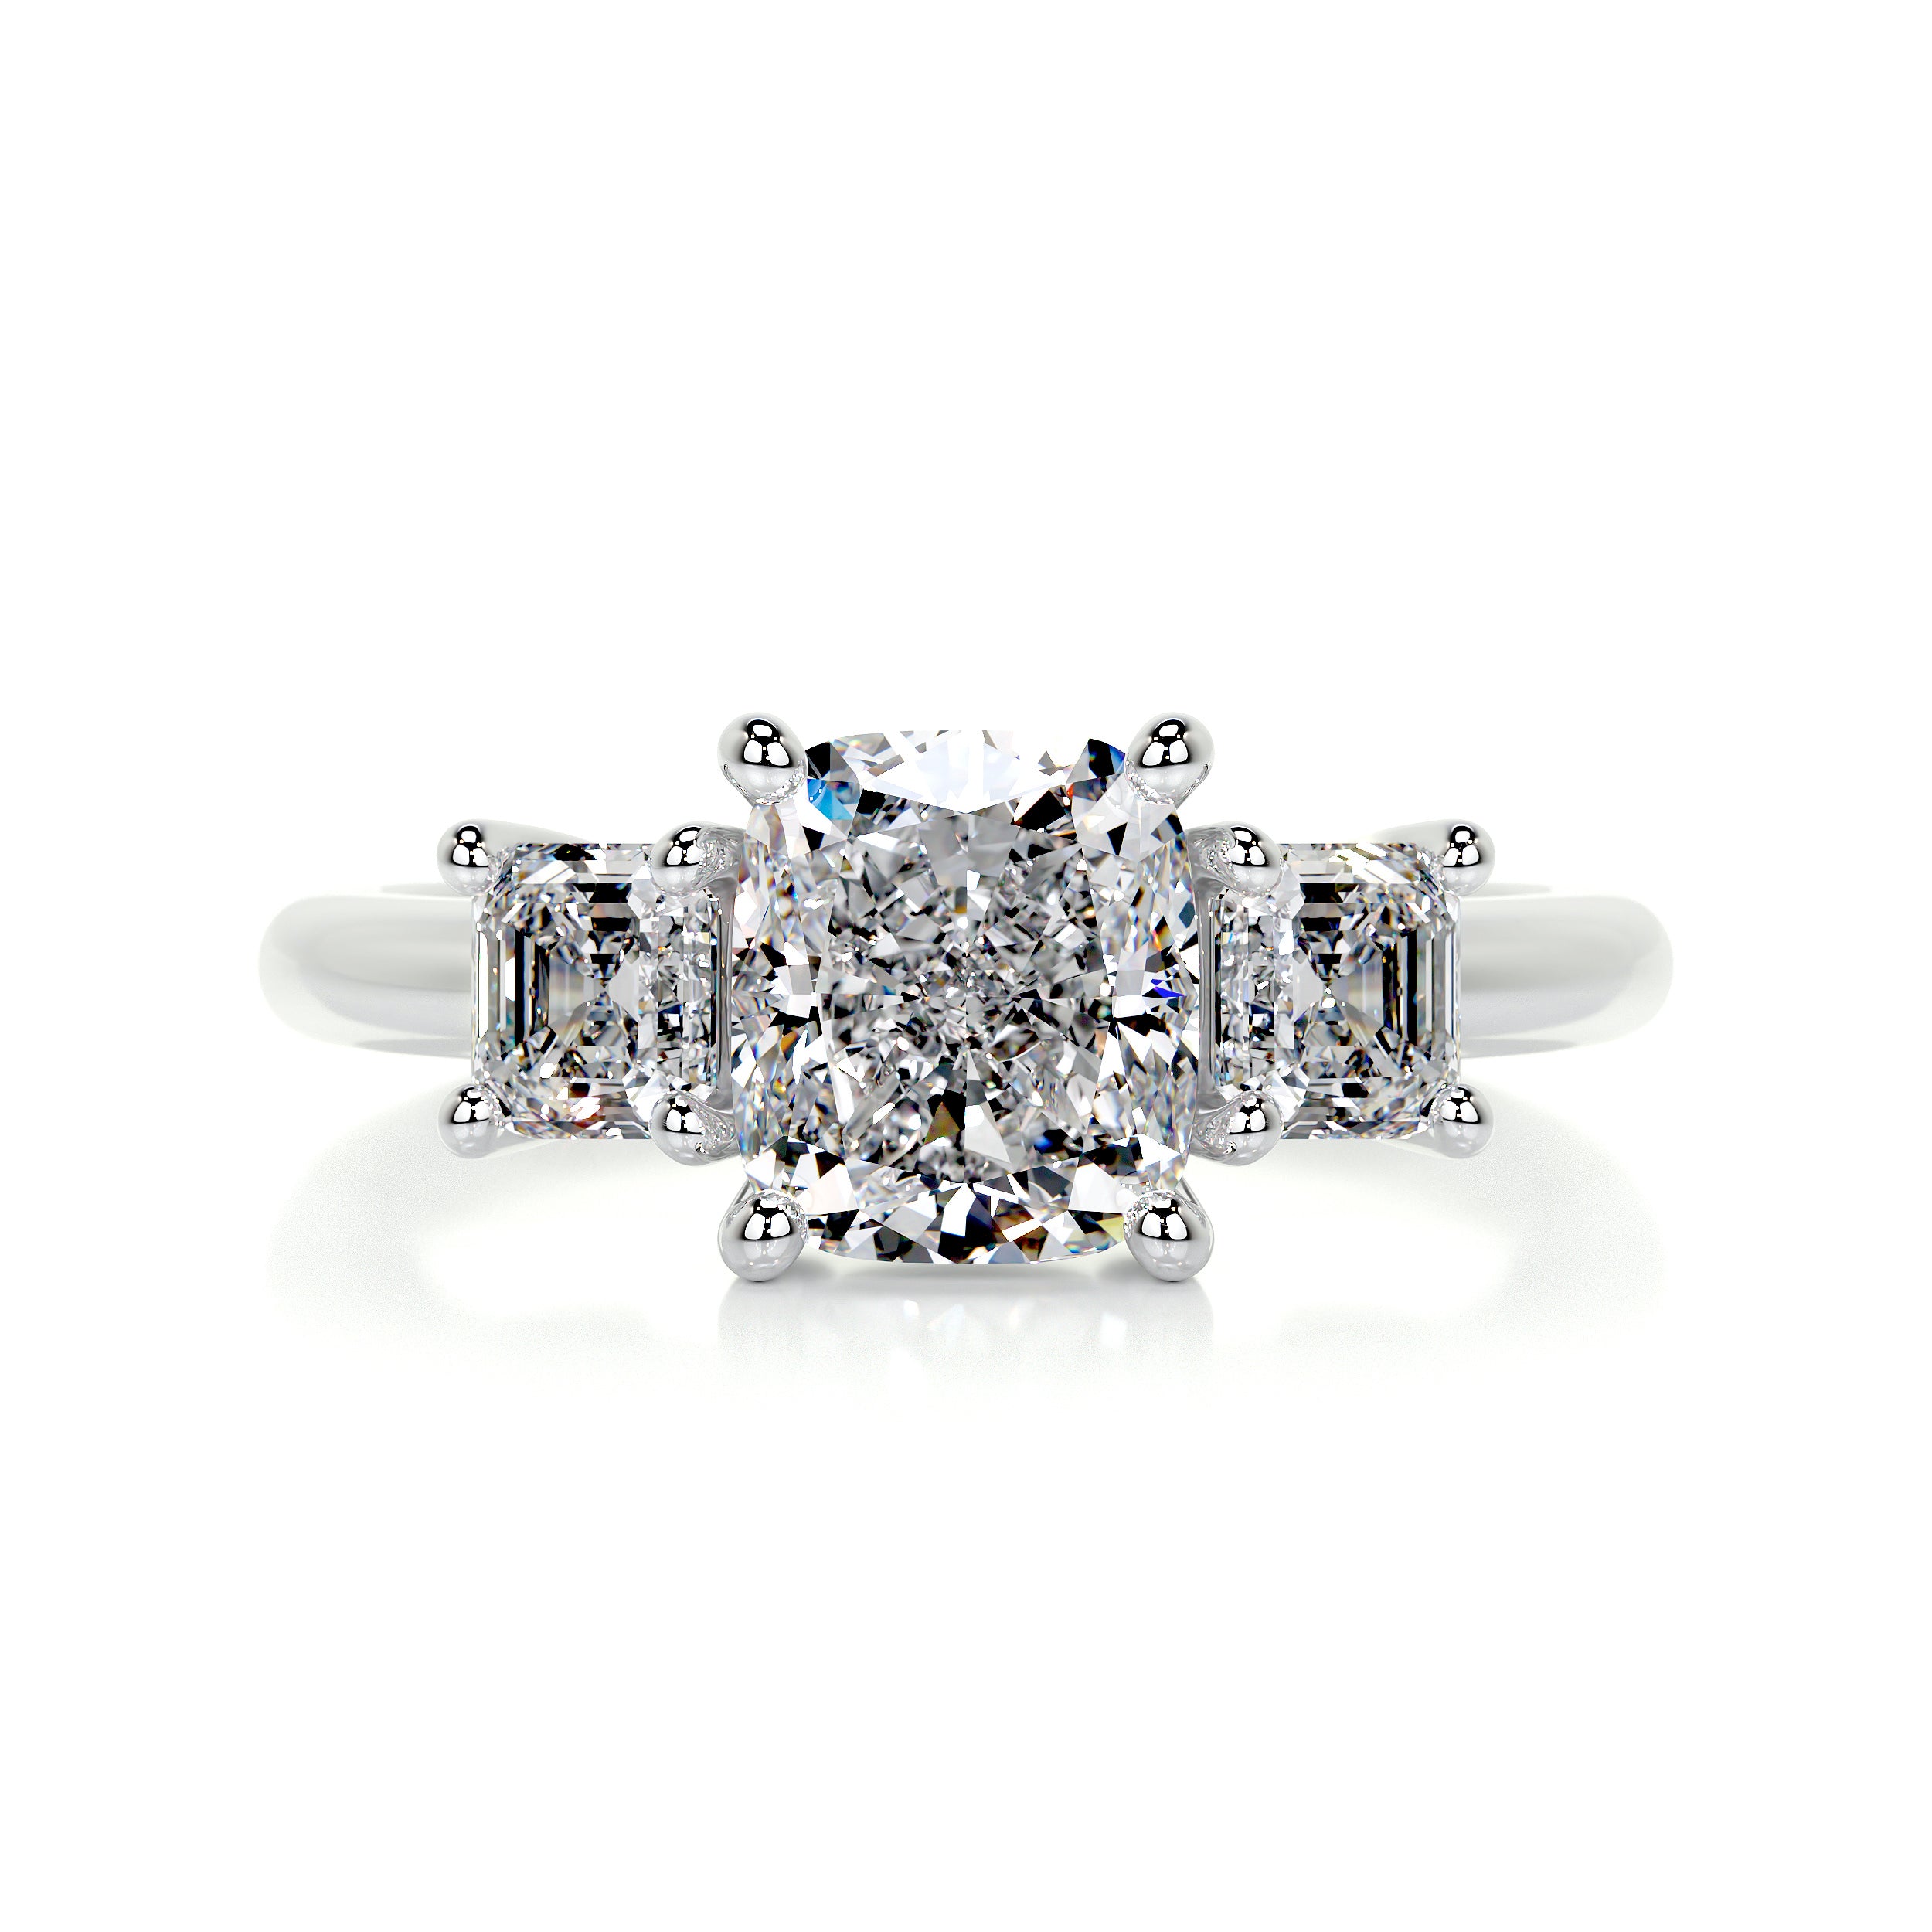 Amanda Diamond Engagement Ring   (3 Carat) -Platinum